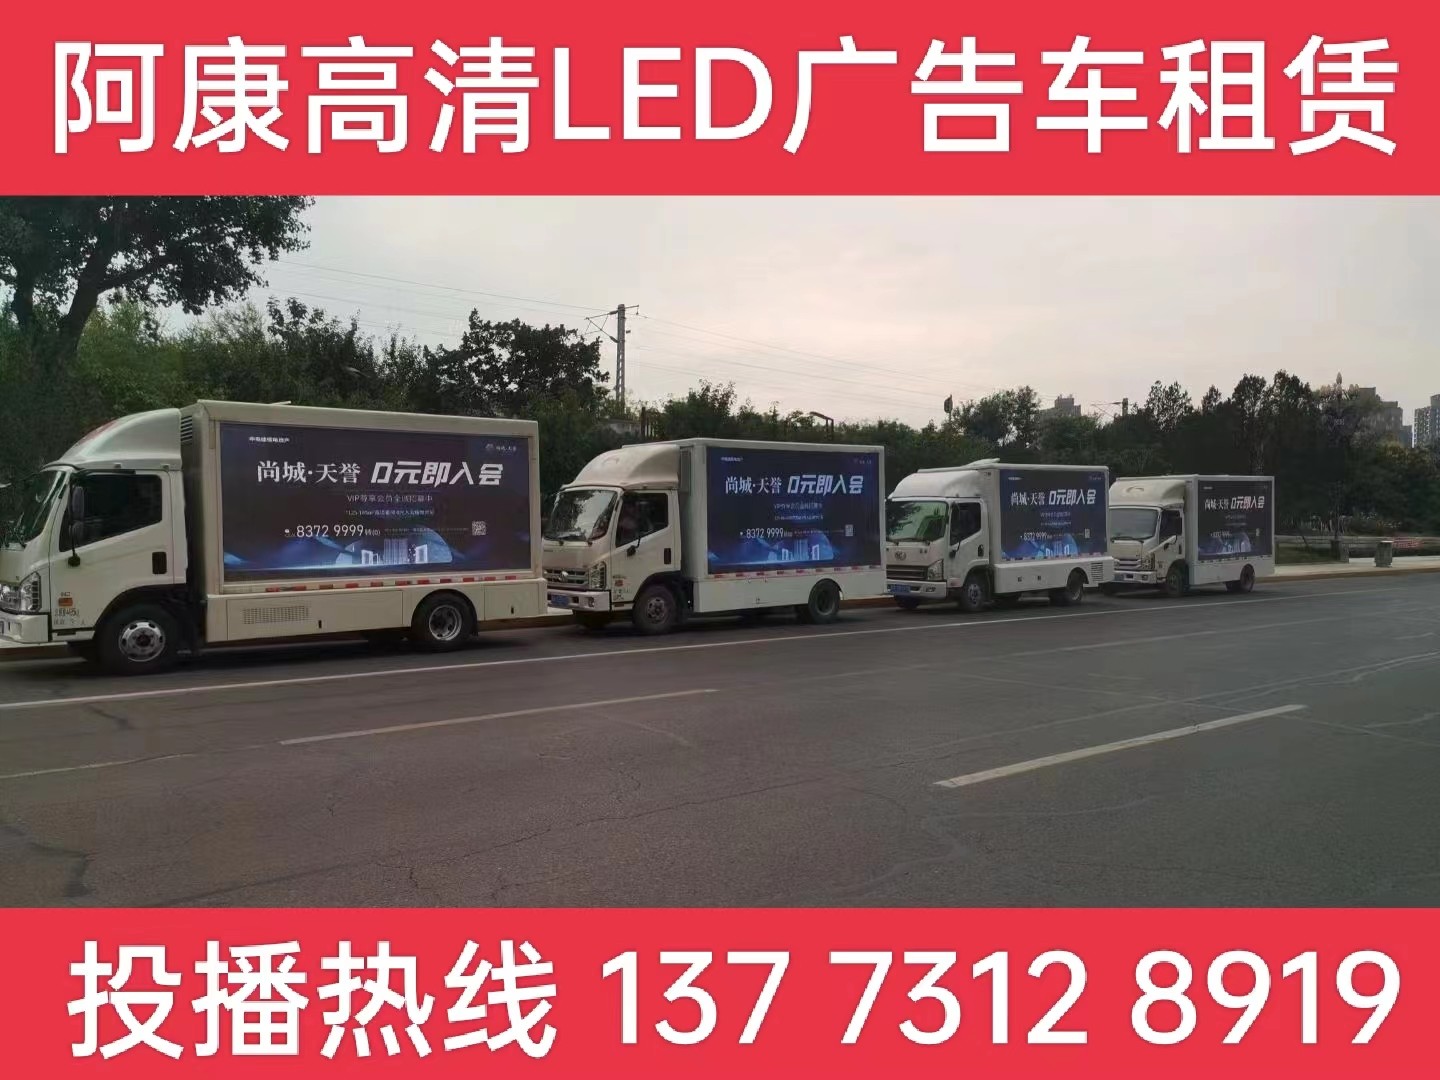 芜湖LED广告车出租公司